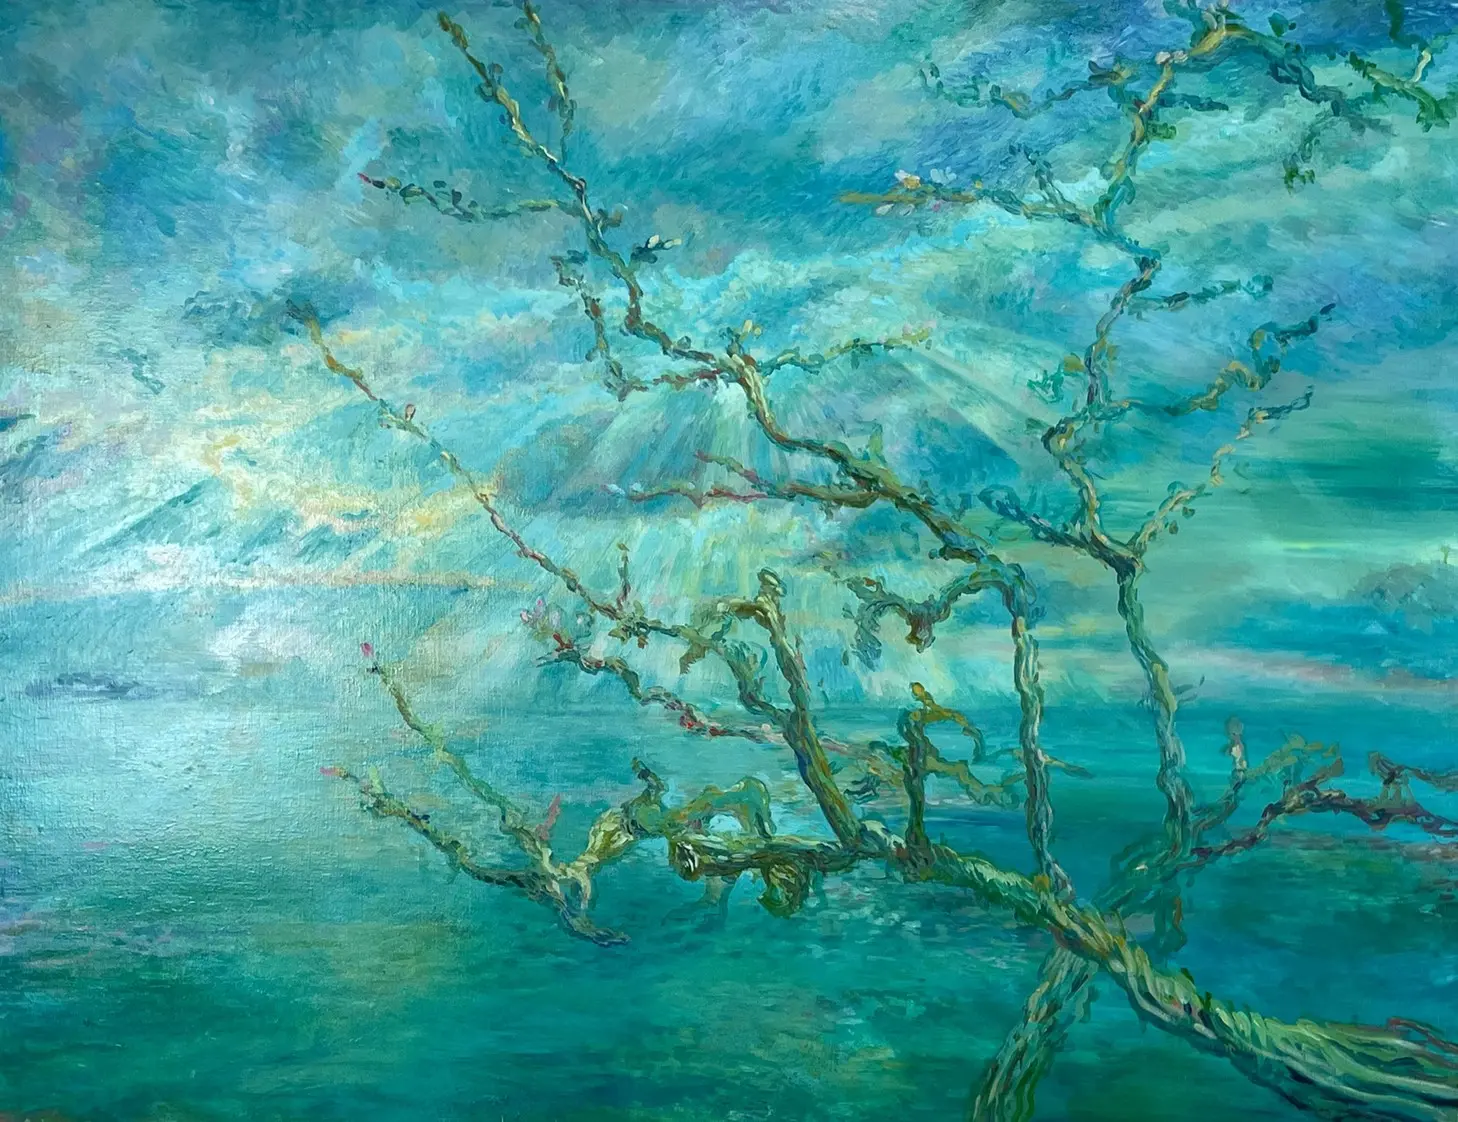 木村 美和的平真太郎「青空と樹」 | 当代艺术的网上艺术商店 | ArtSticker